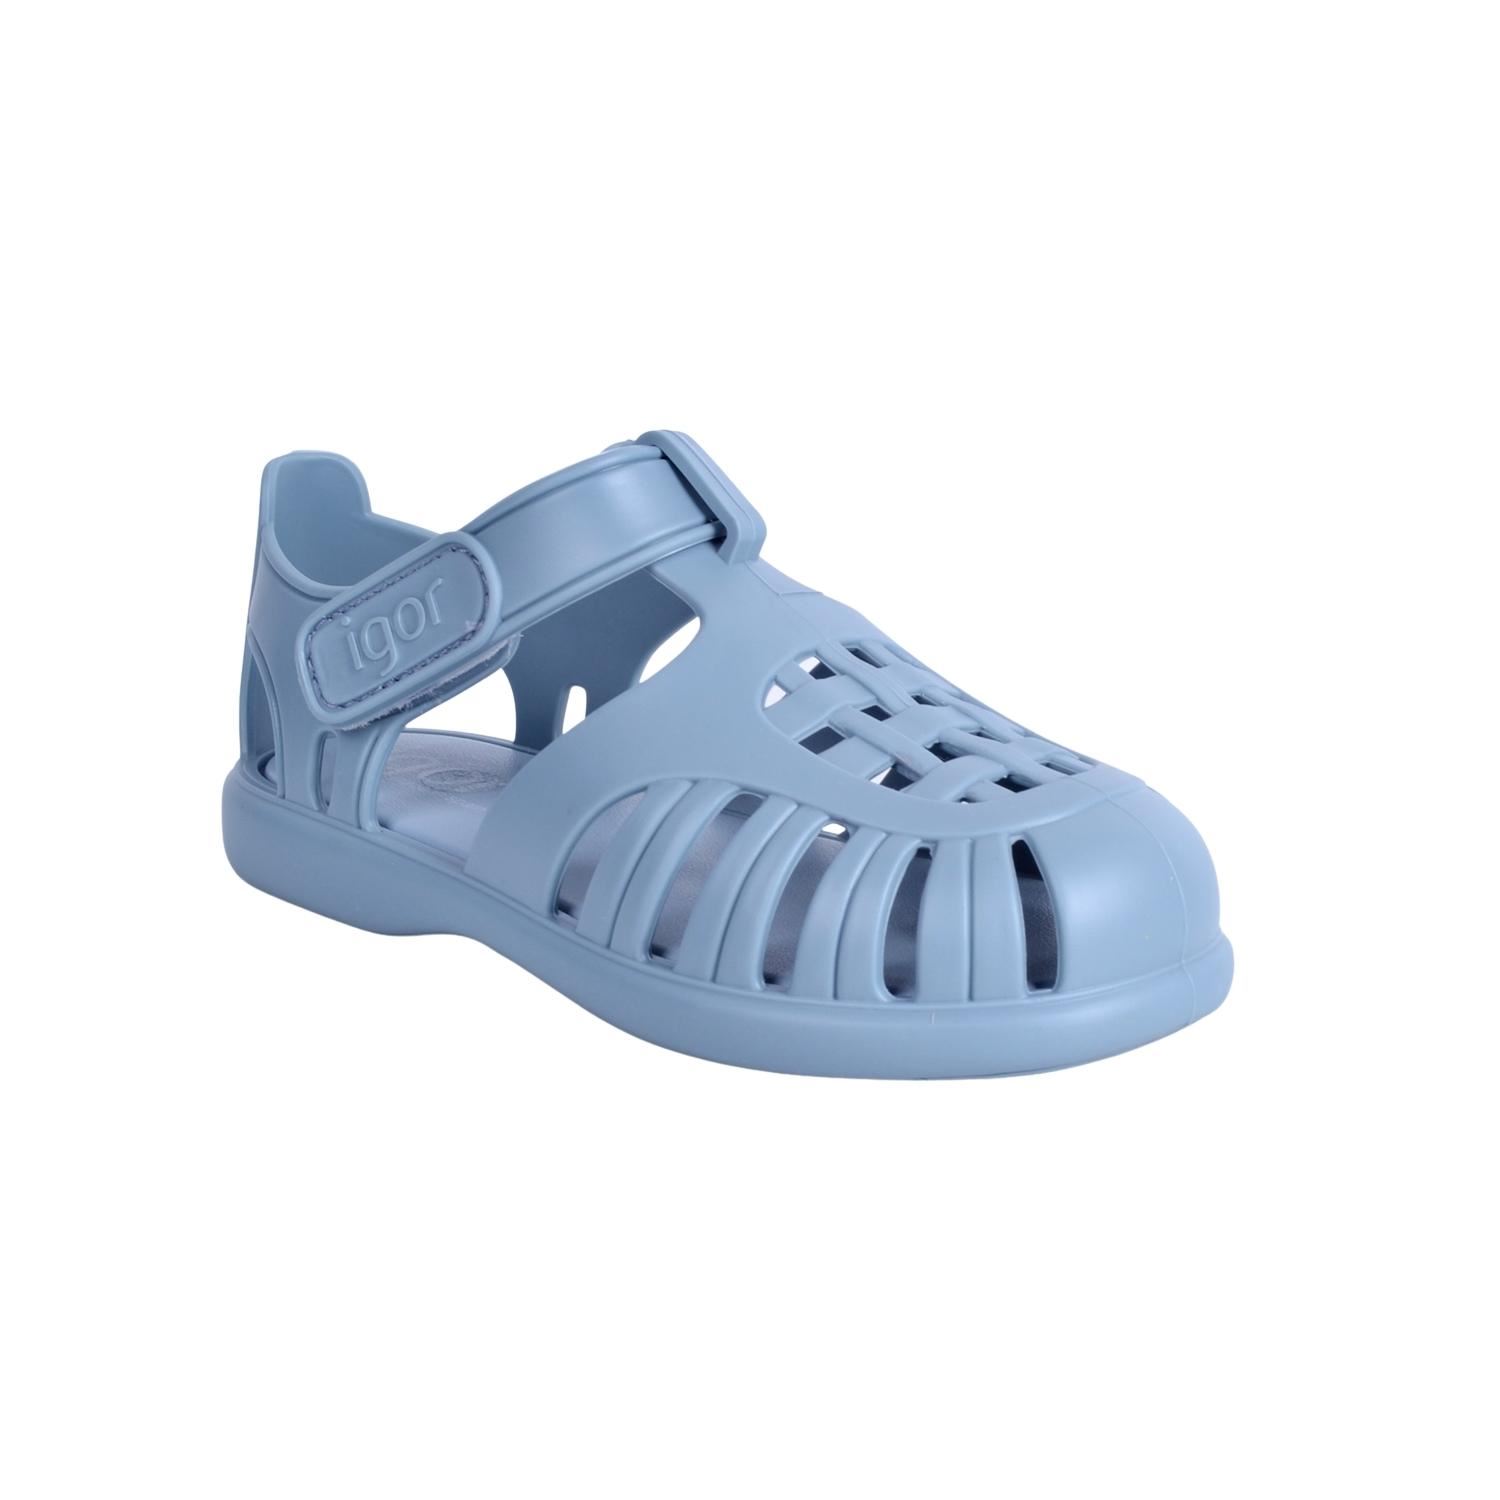 Igor S10271 Tobby Solid Çocuk Okyanus Mavisi Sandalet